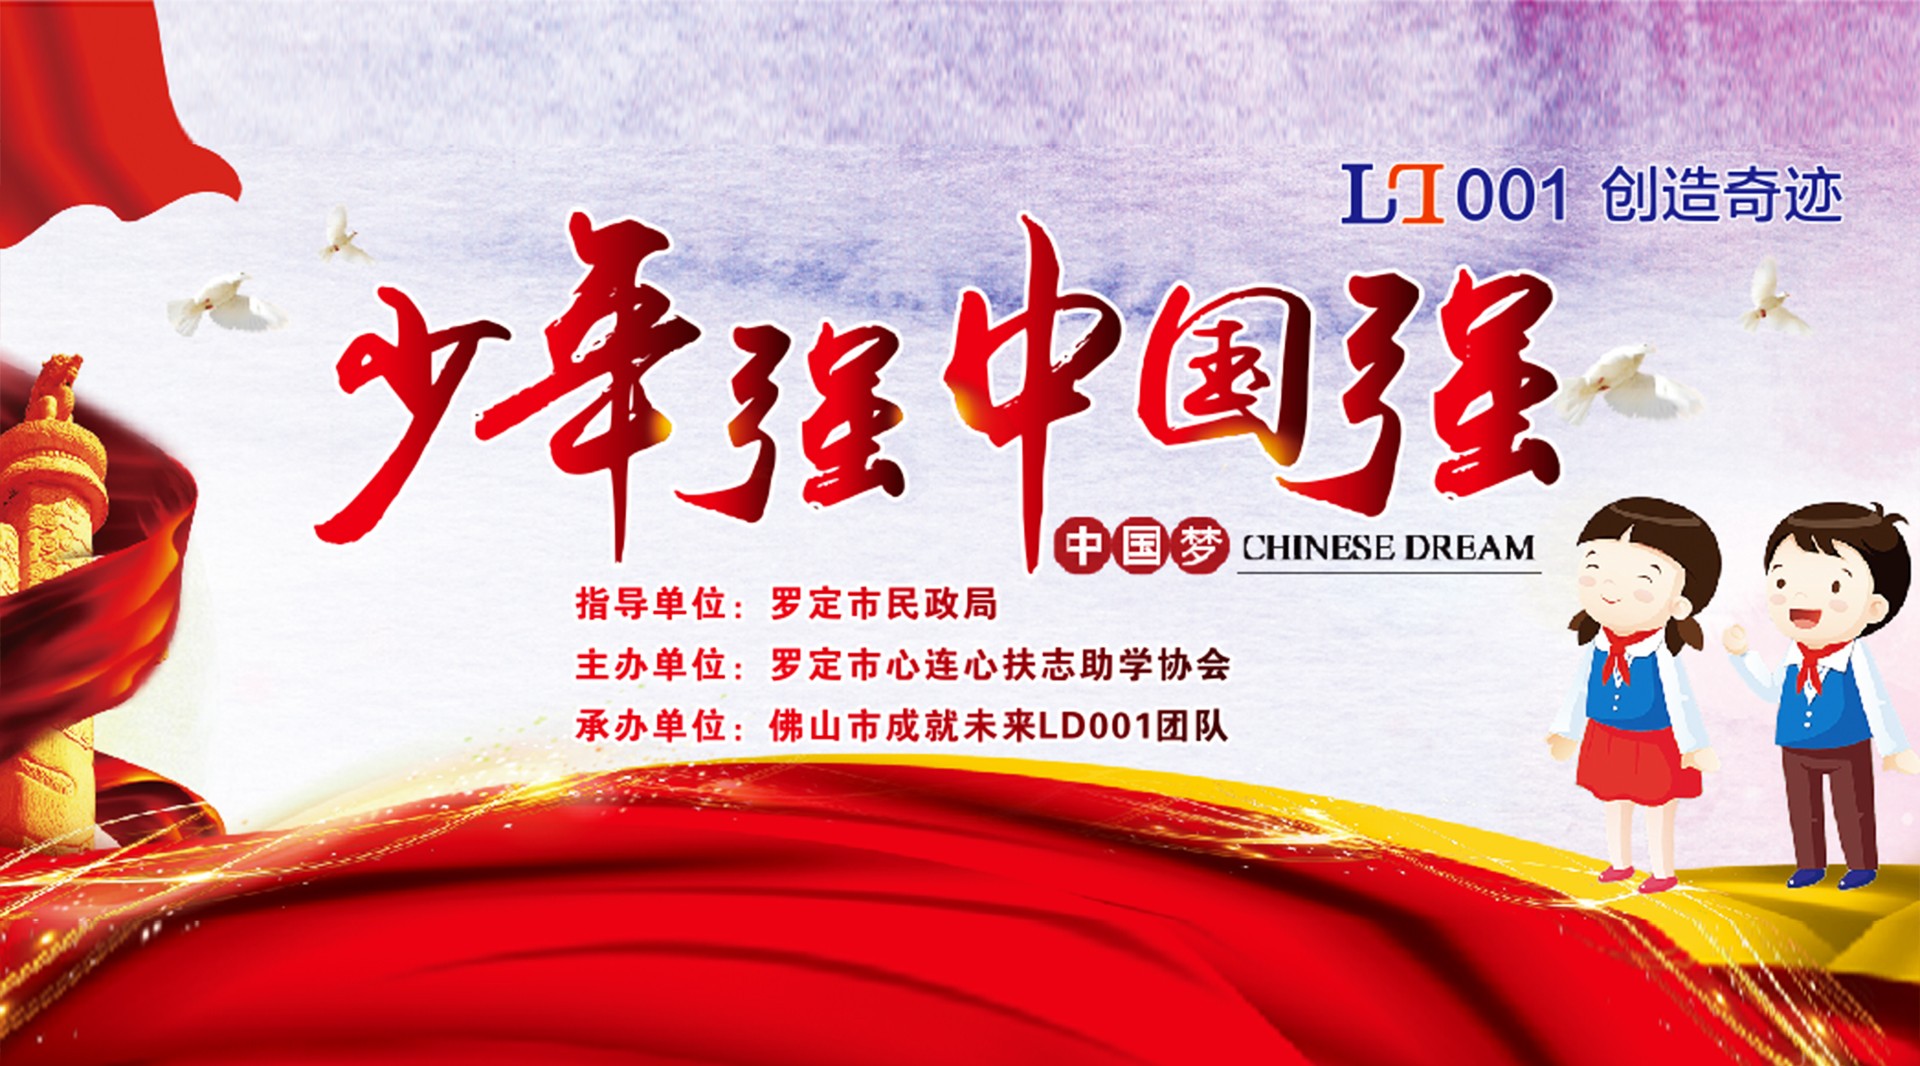 少年强中国强大型公益活动-LD001创造奇迹 